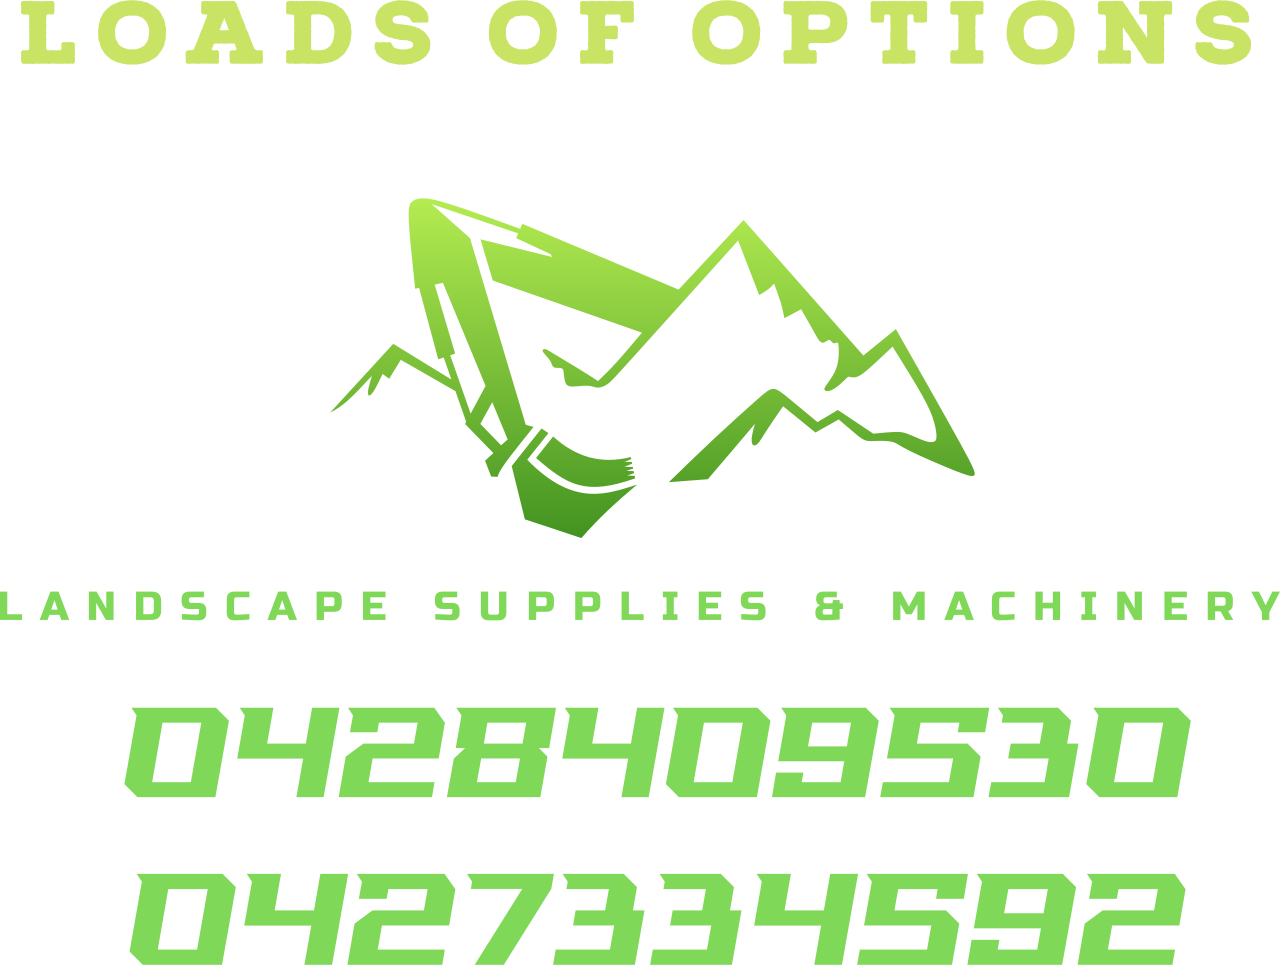 Loads of options 's logo